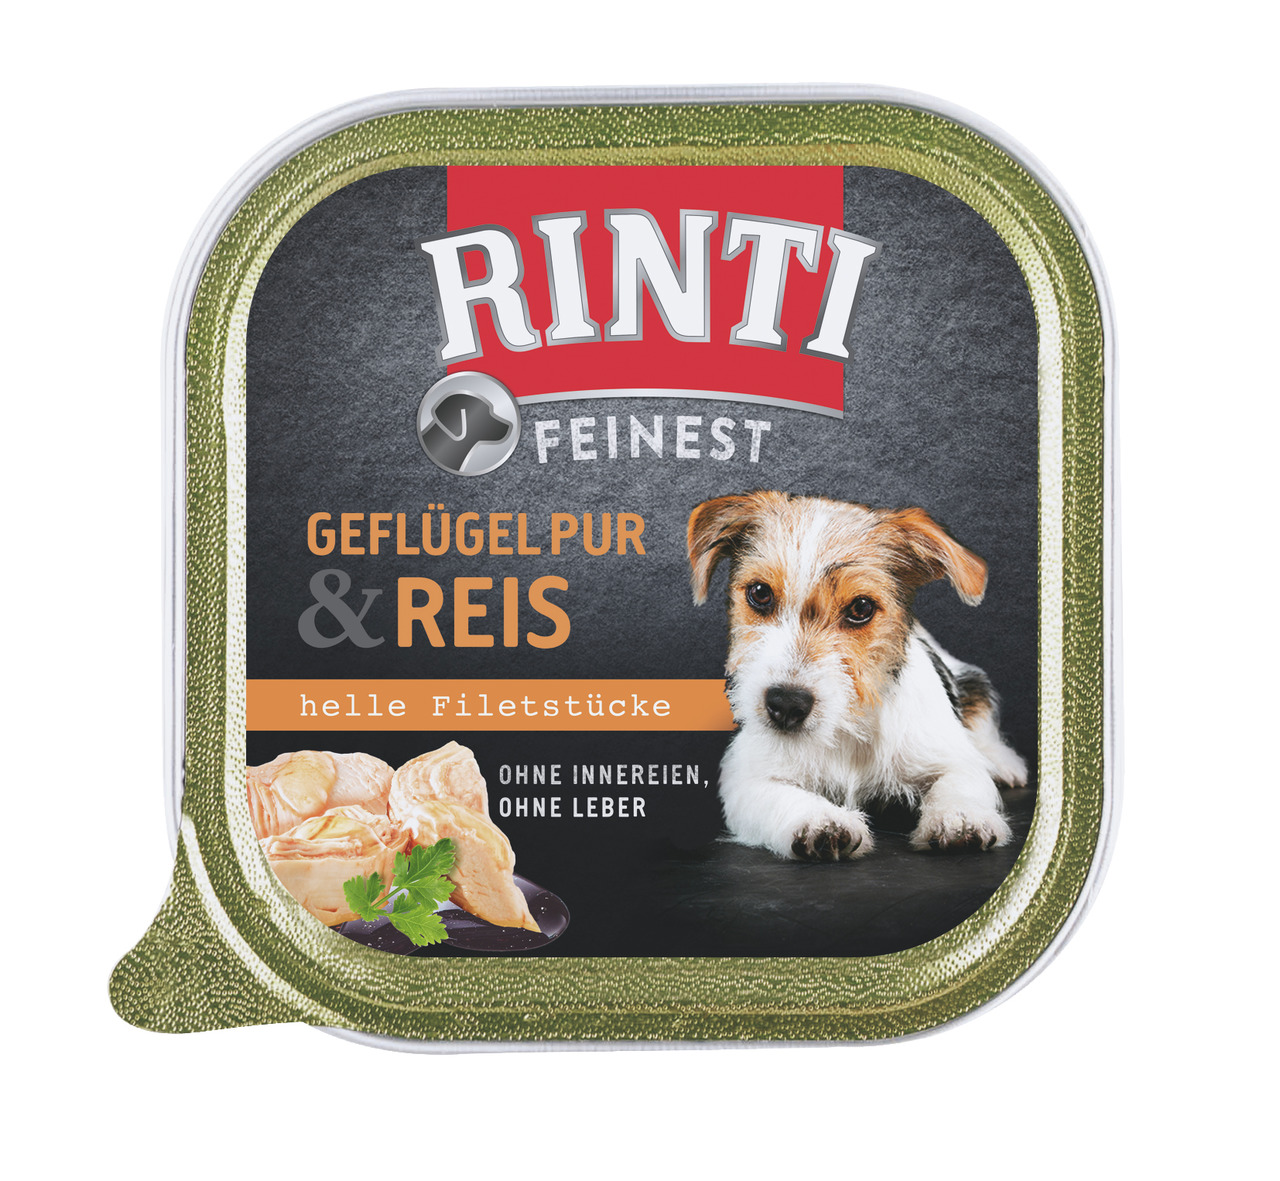 RINTI Feinest Geflügel Pur & Reis 150g Hundenassfutter